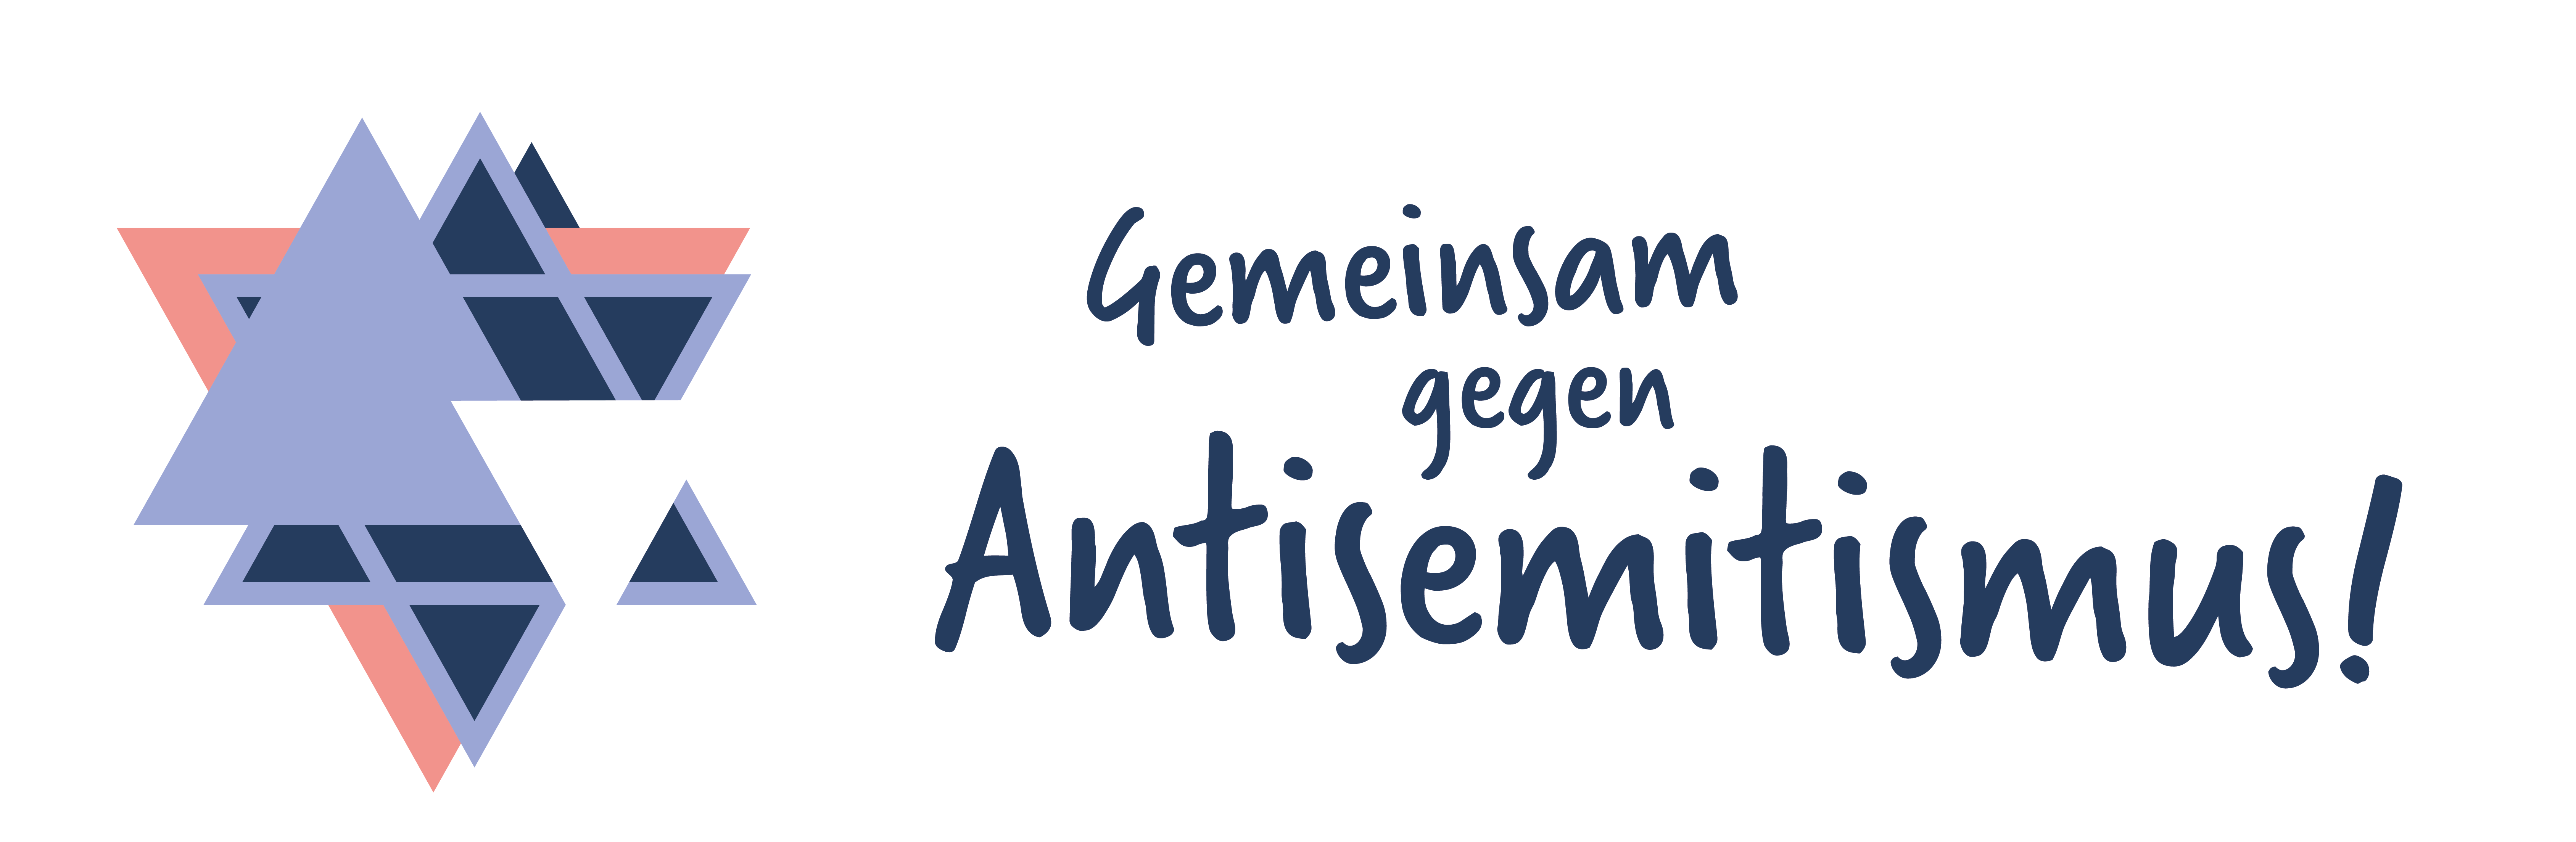 Gemeinsam gegen Antisemitismus